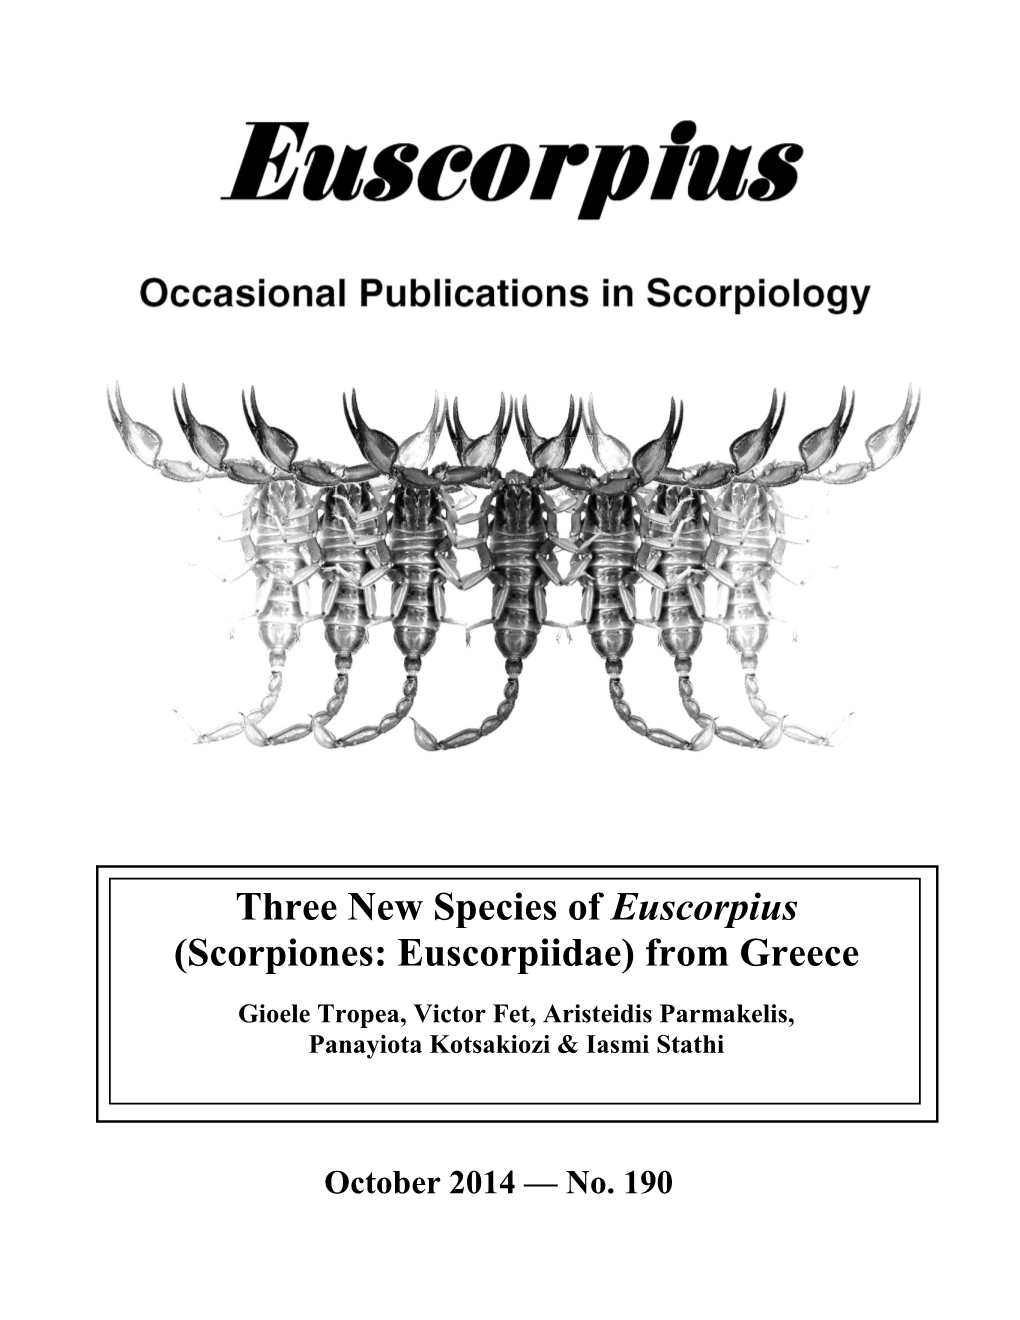 Euscorpius. 2014